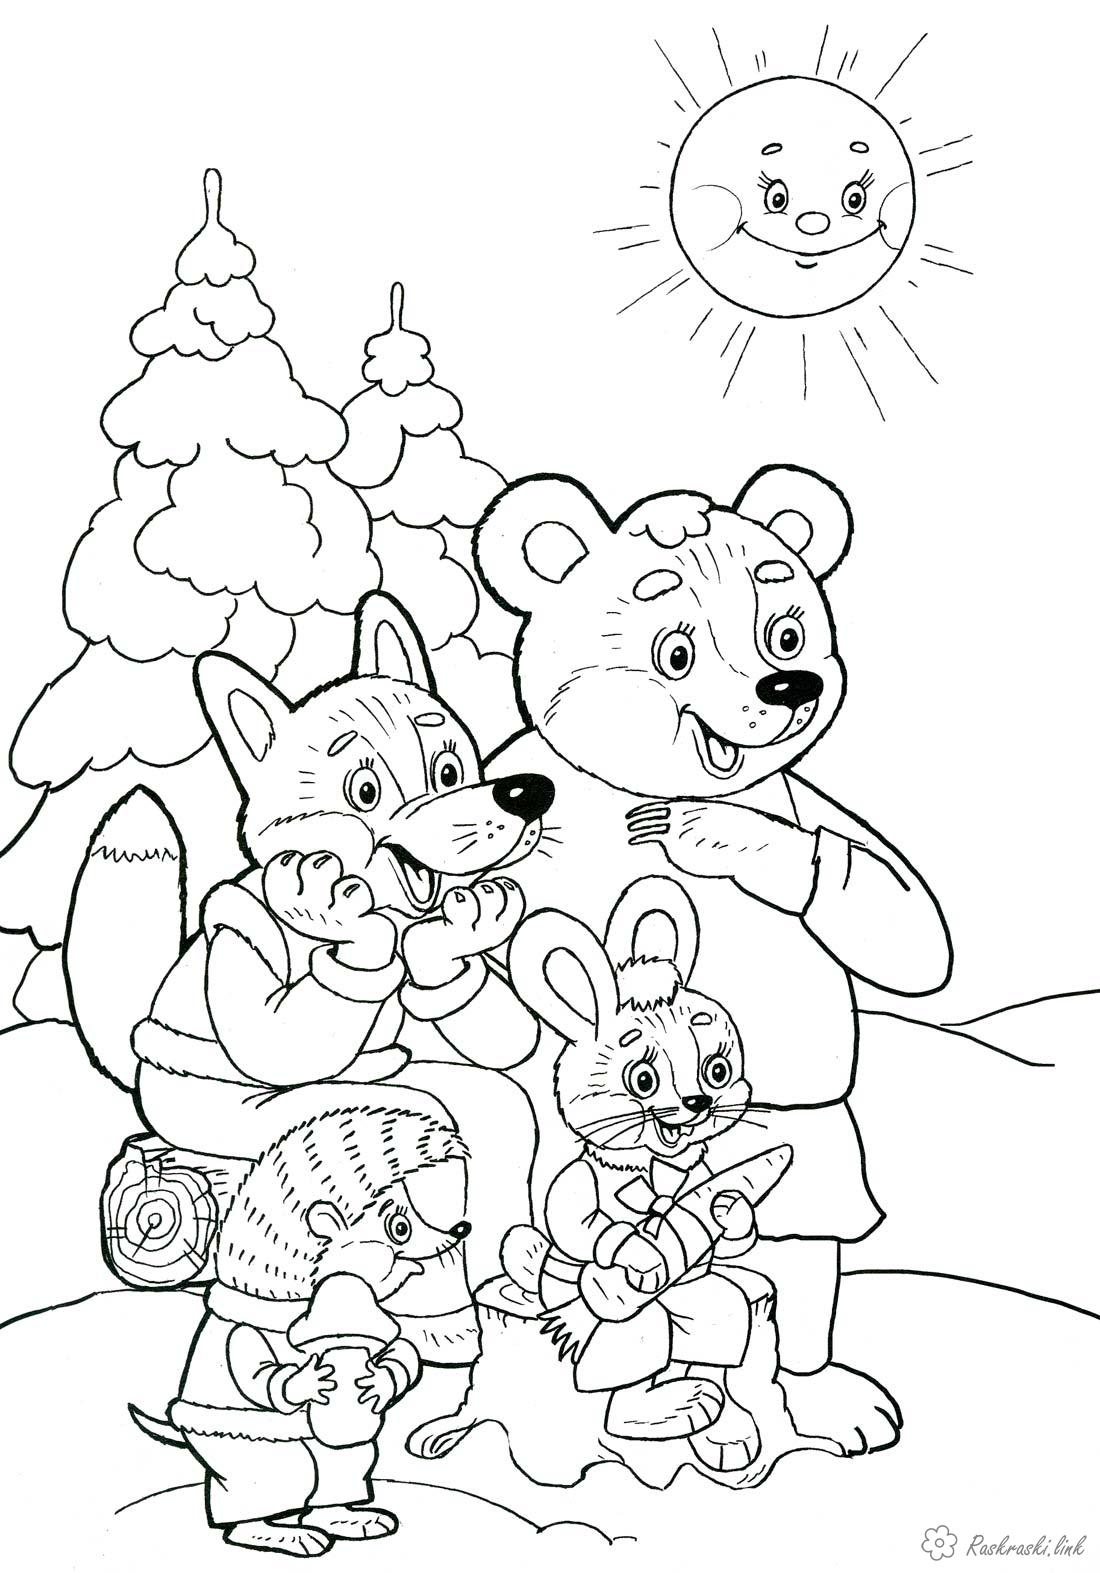 Розмальовки розмальовка Дитяча новорічна розфарбування, ялинки, ведмідь, лисиця, заєць, їжачок і яскраве сонечко